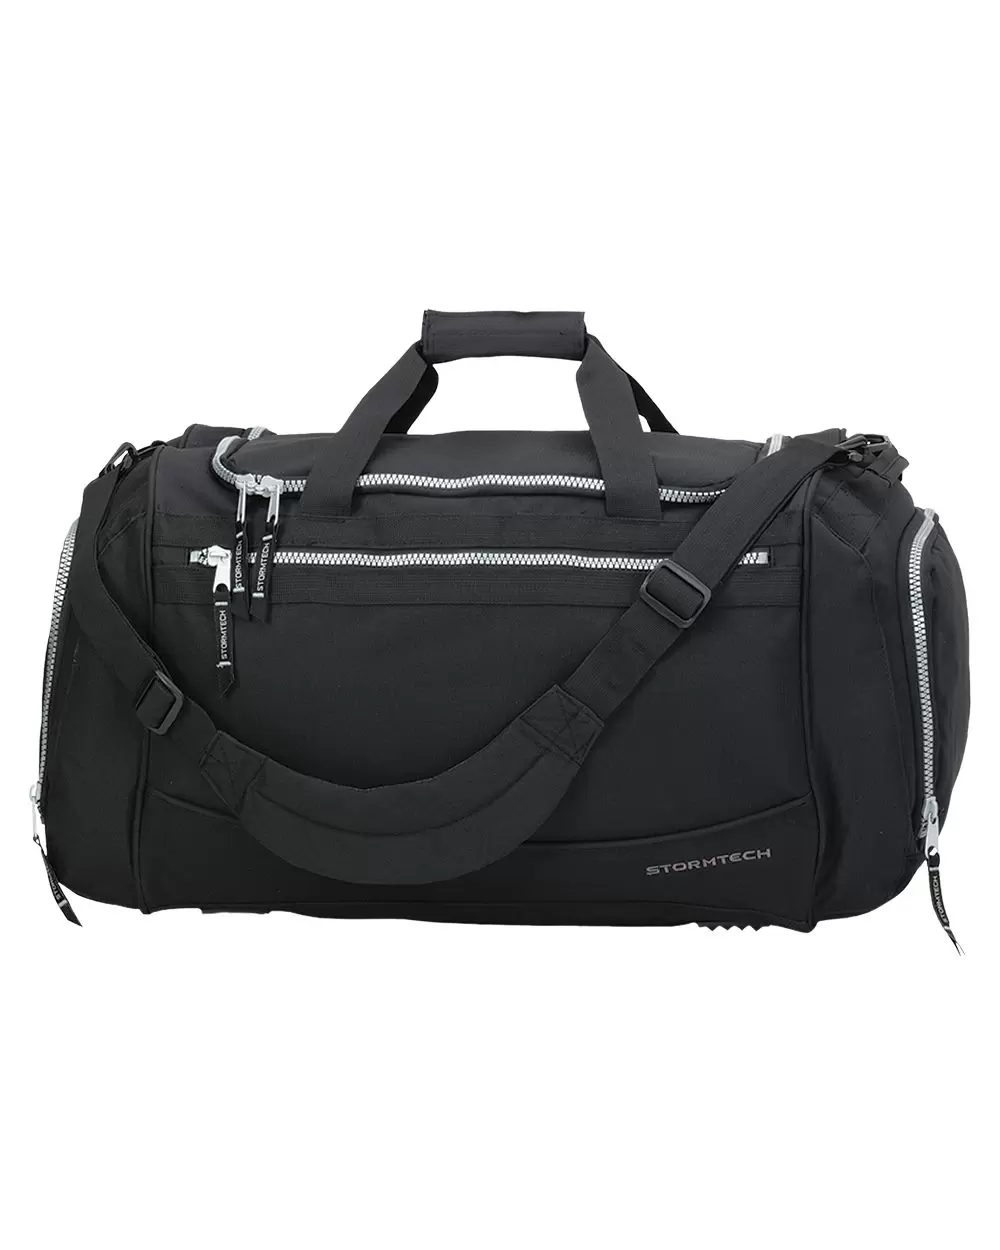 Stormtech CTX-1 45L Duffel Bag - From $20.31